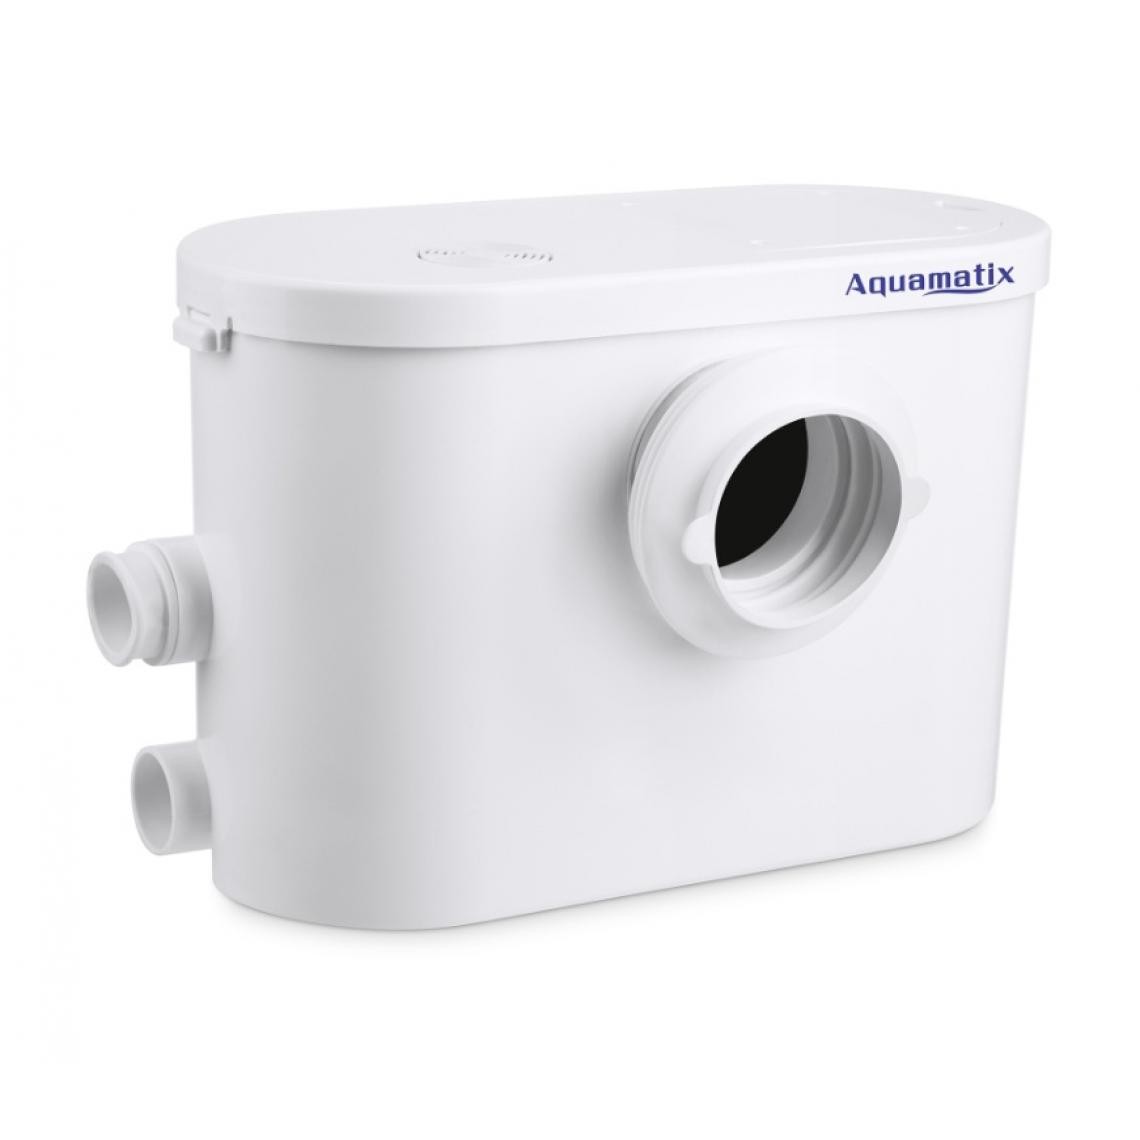 Aquamatix - Aquamatix - Broyeur silencieux (toilette) 400W 30/35dB - Silencio 3 - Broyeur WC